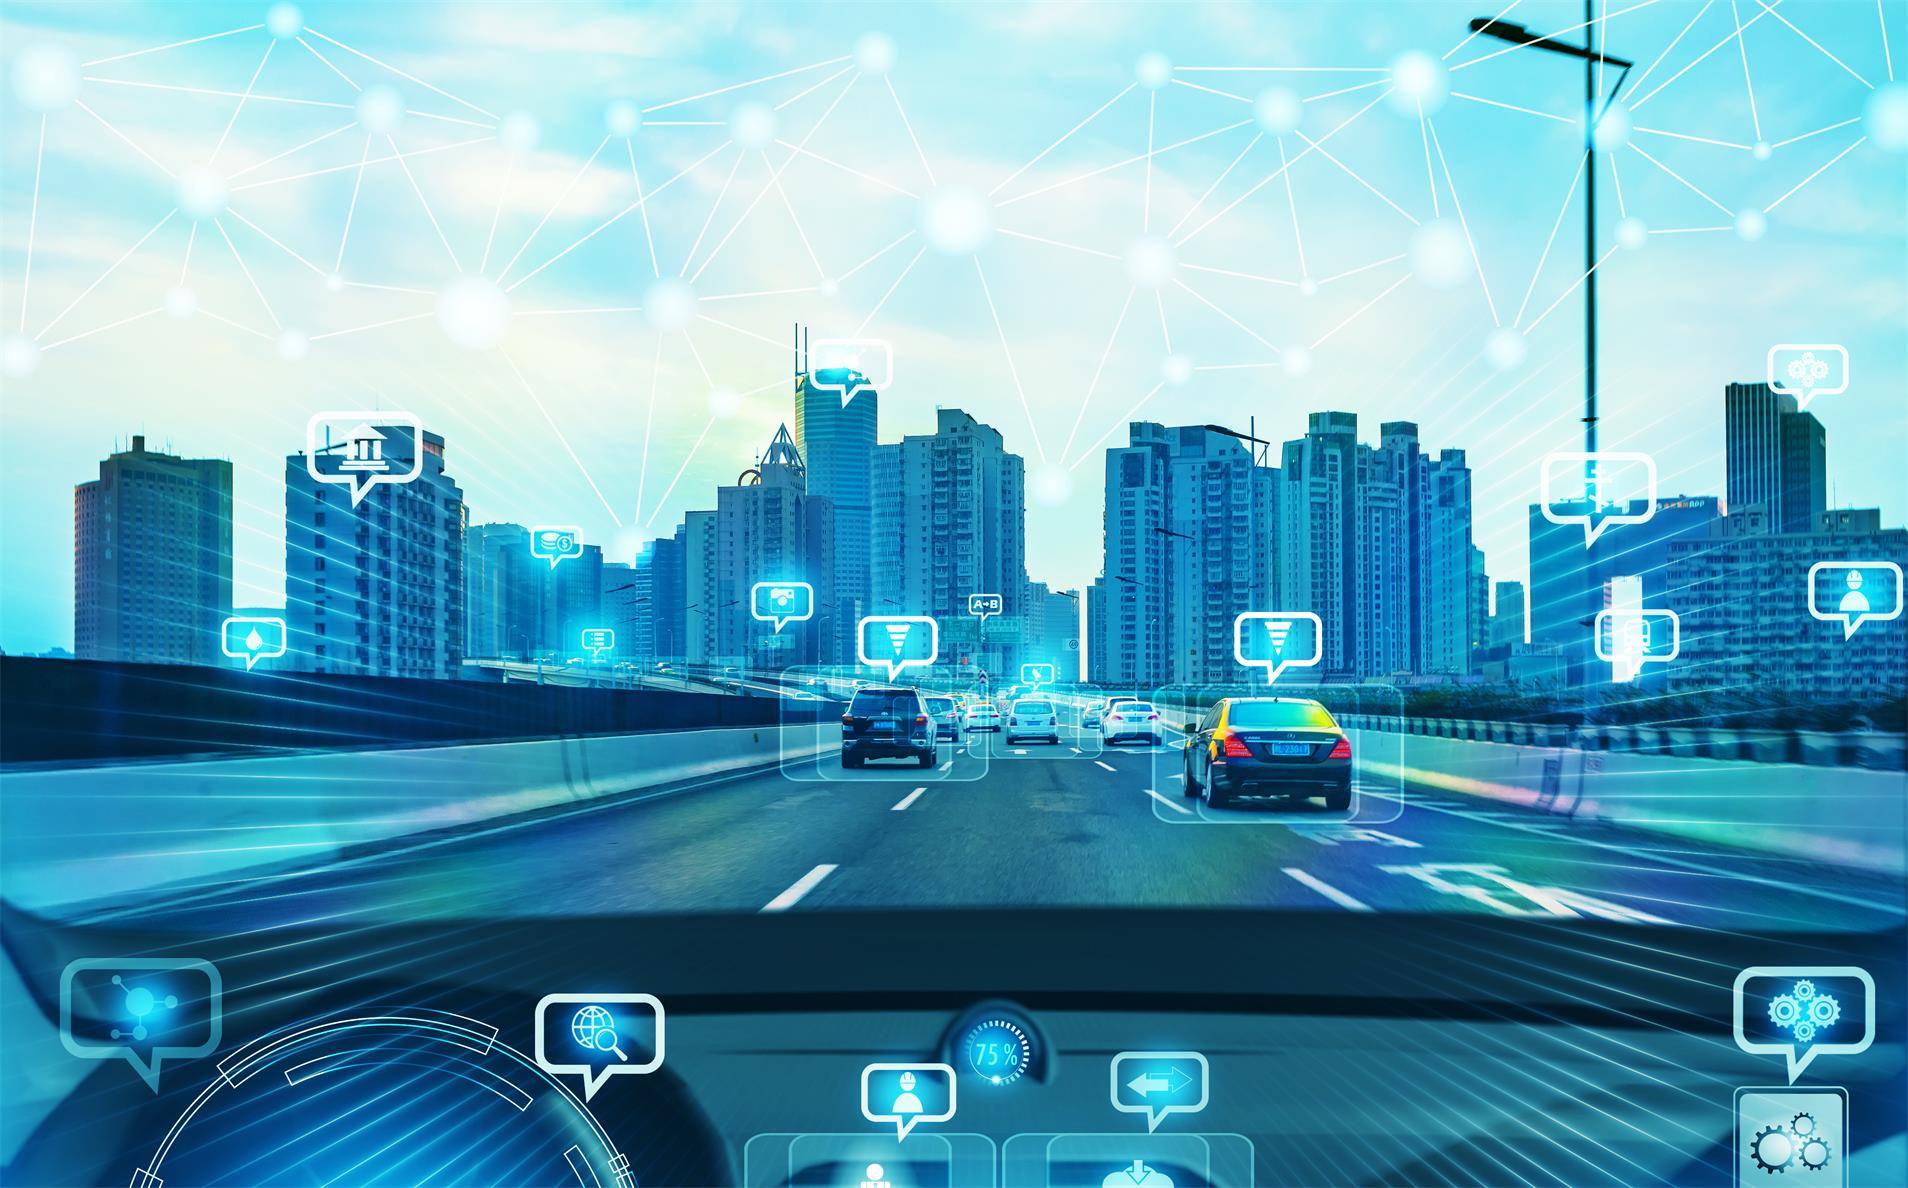 kvm主机矩阵切换器系统部署未来智慧城市智能交通运营控制中心管理